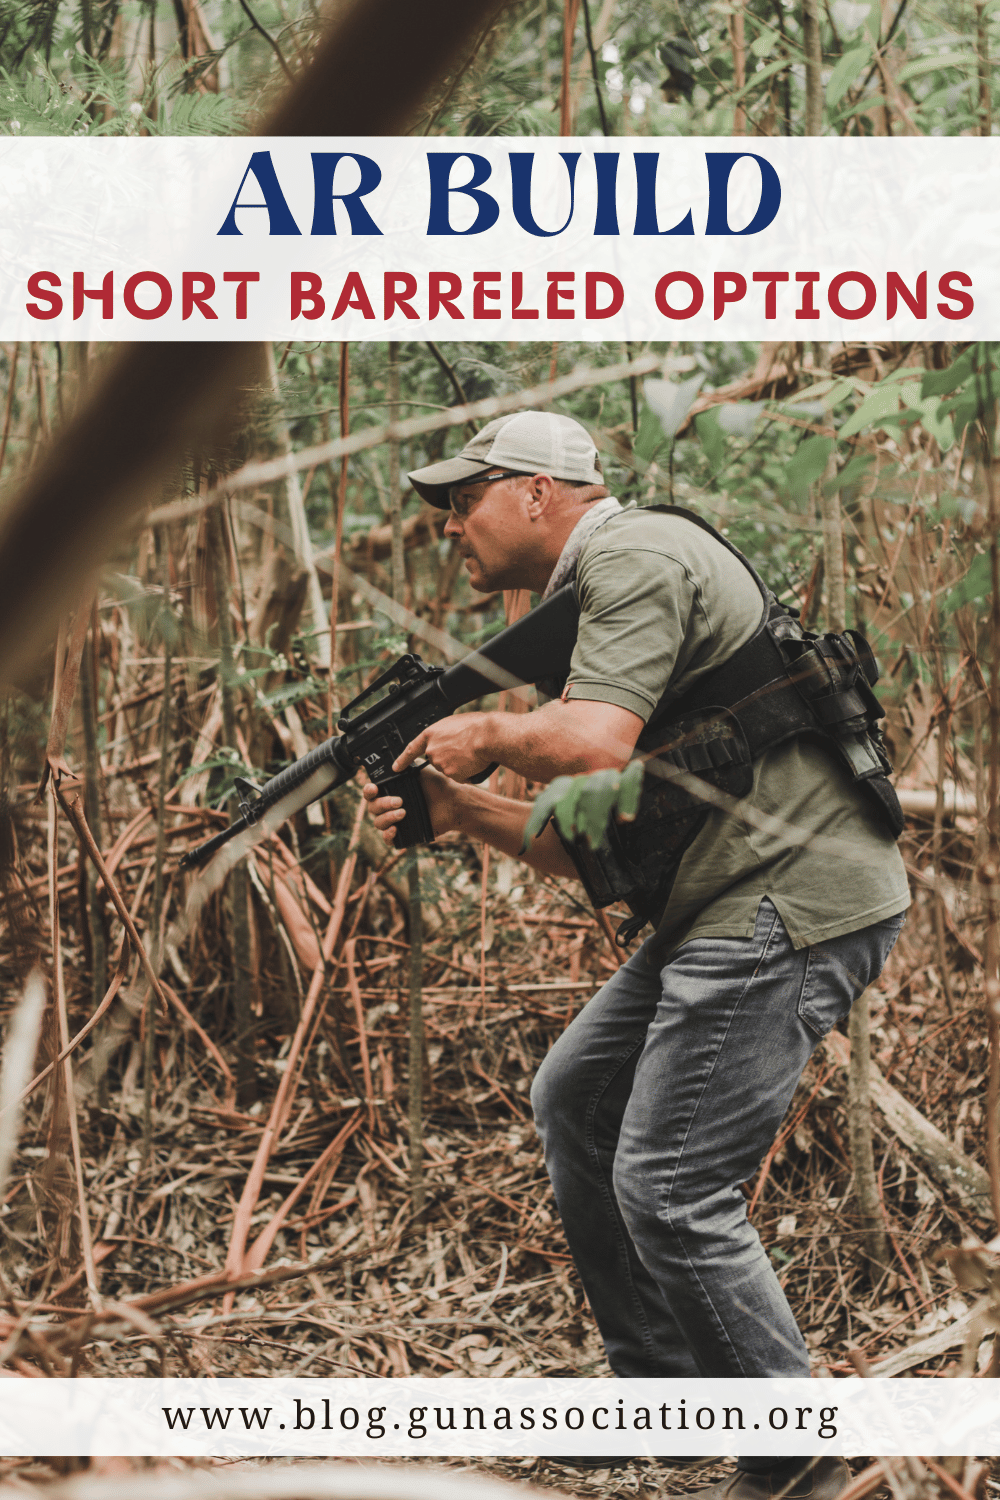 AR build short-barreled options